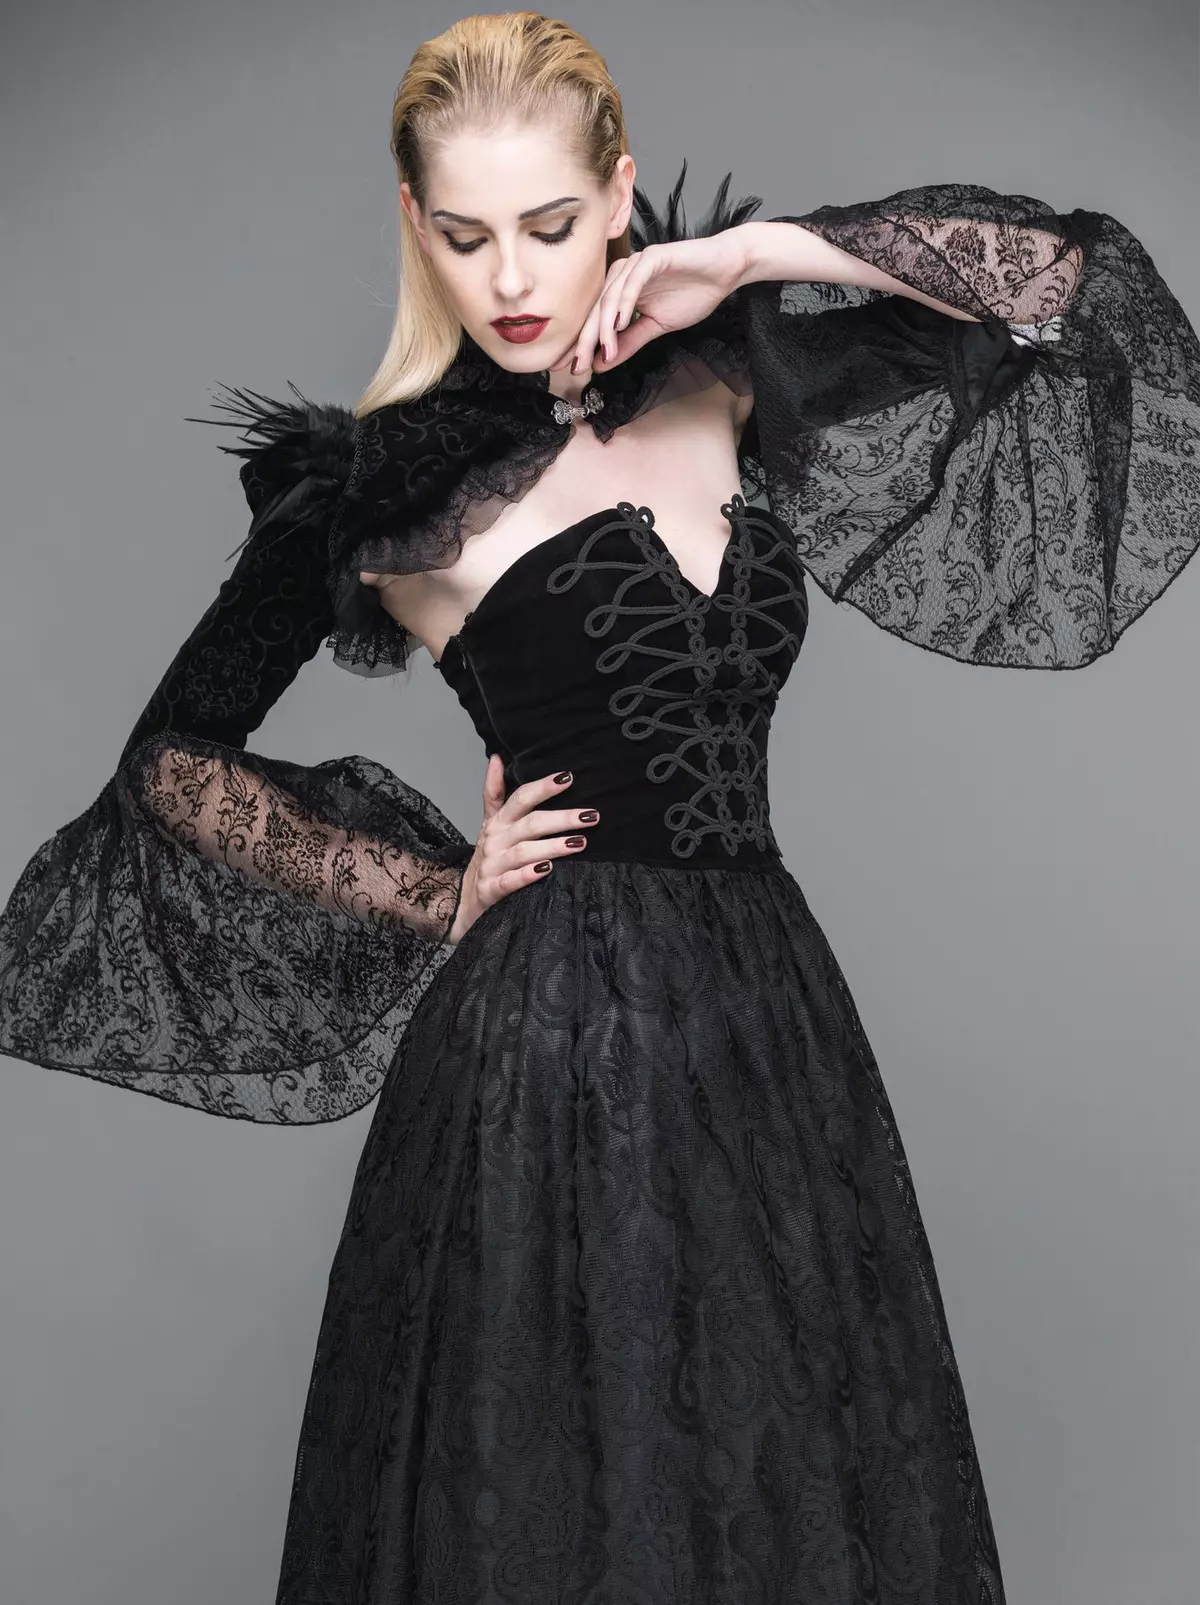 Gooti kleidid: Lolita stiilis, mustad pulmakleidid ja lühikese korsetiga lõpetamisel. Ilus näited õhtuse varustus 819_17